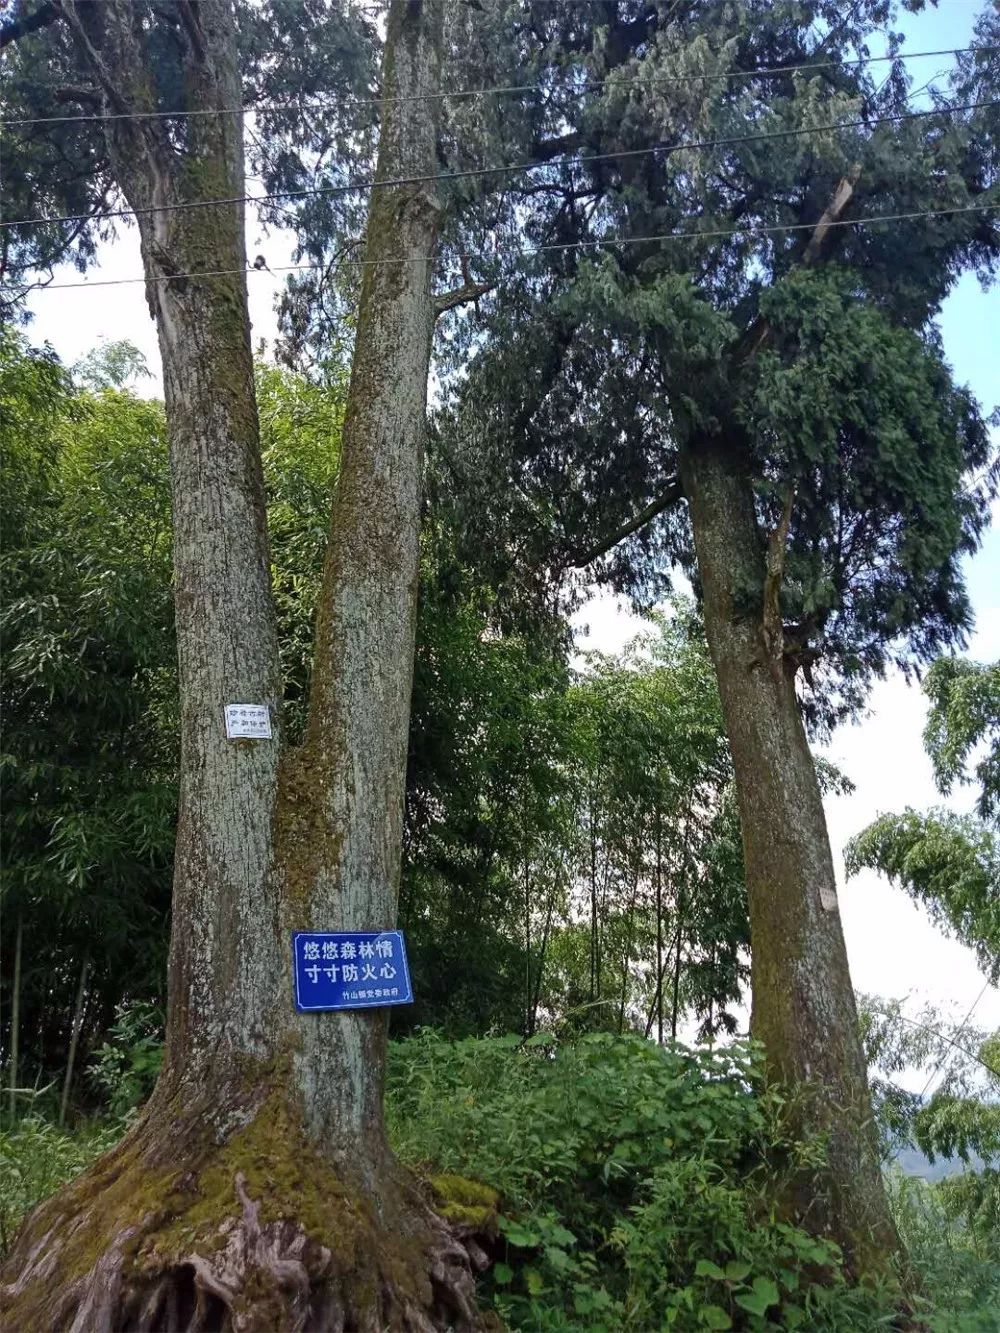 梁平区有棵千年"夫妻树"!它的传说没法让人淡定.